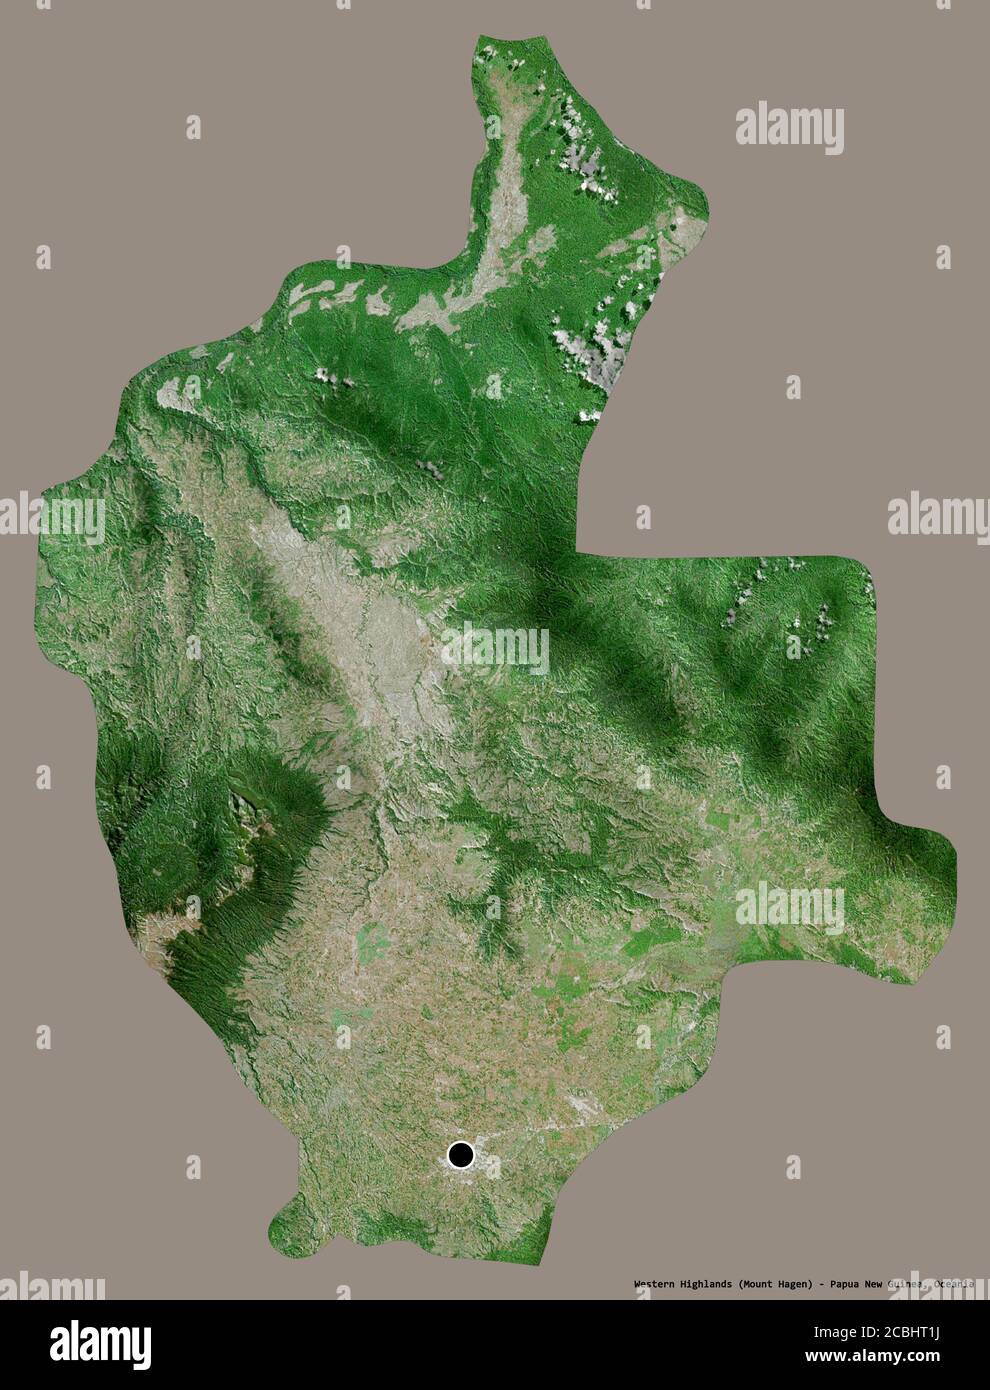 Forma delle Highlands occidentali, provincia della Papua Nuova Guinea, con la sua capitale isolata su uno sfondo di colore solido. Immagini satellitari. Rendering 3D Foto Stock